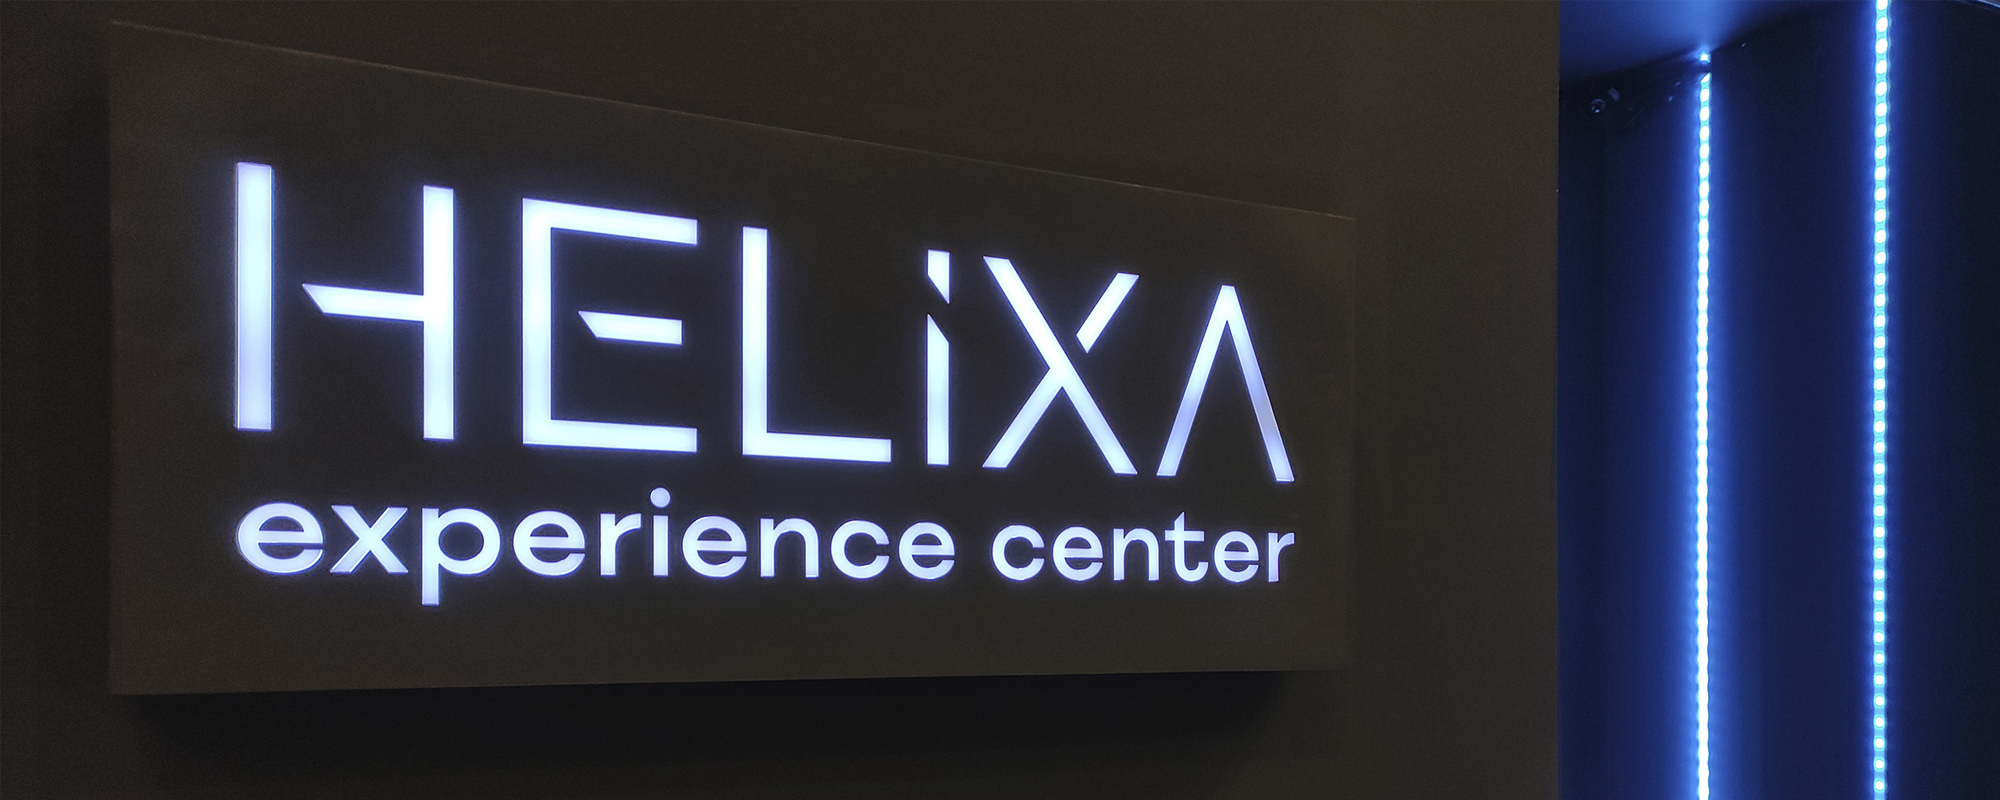 Helixa Experience Center © 2022